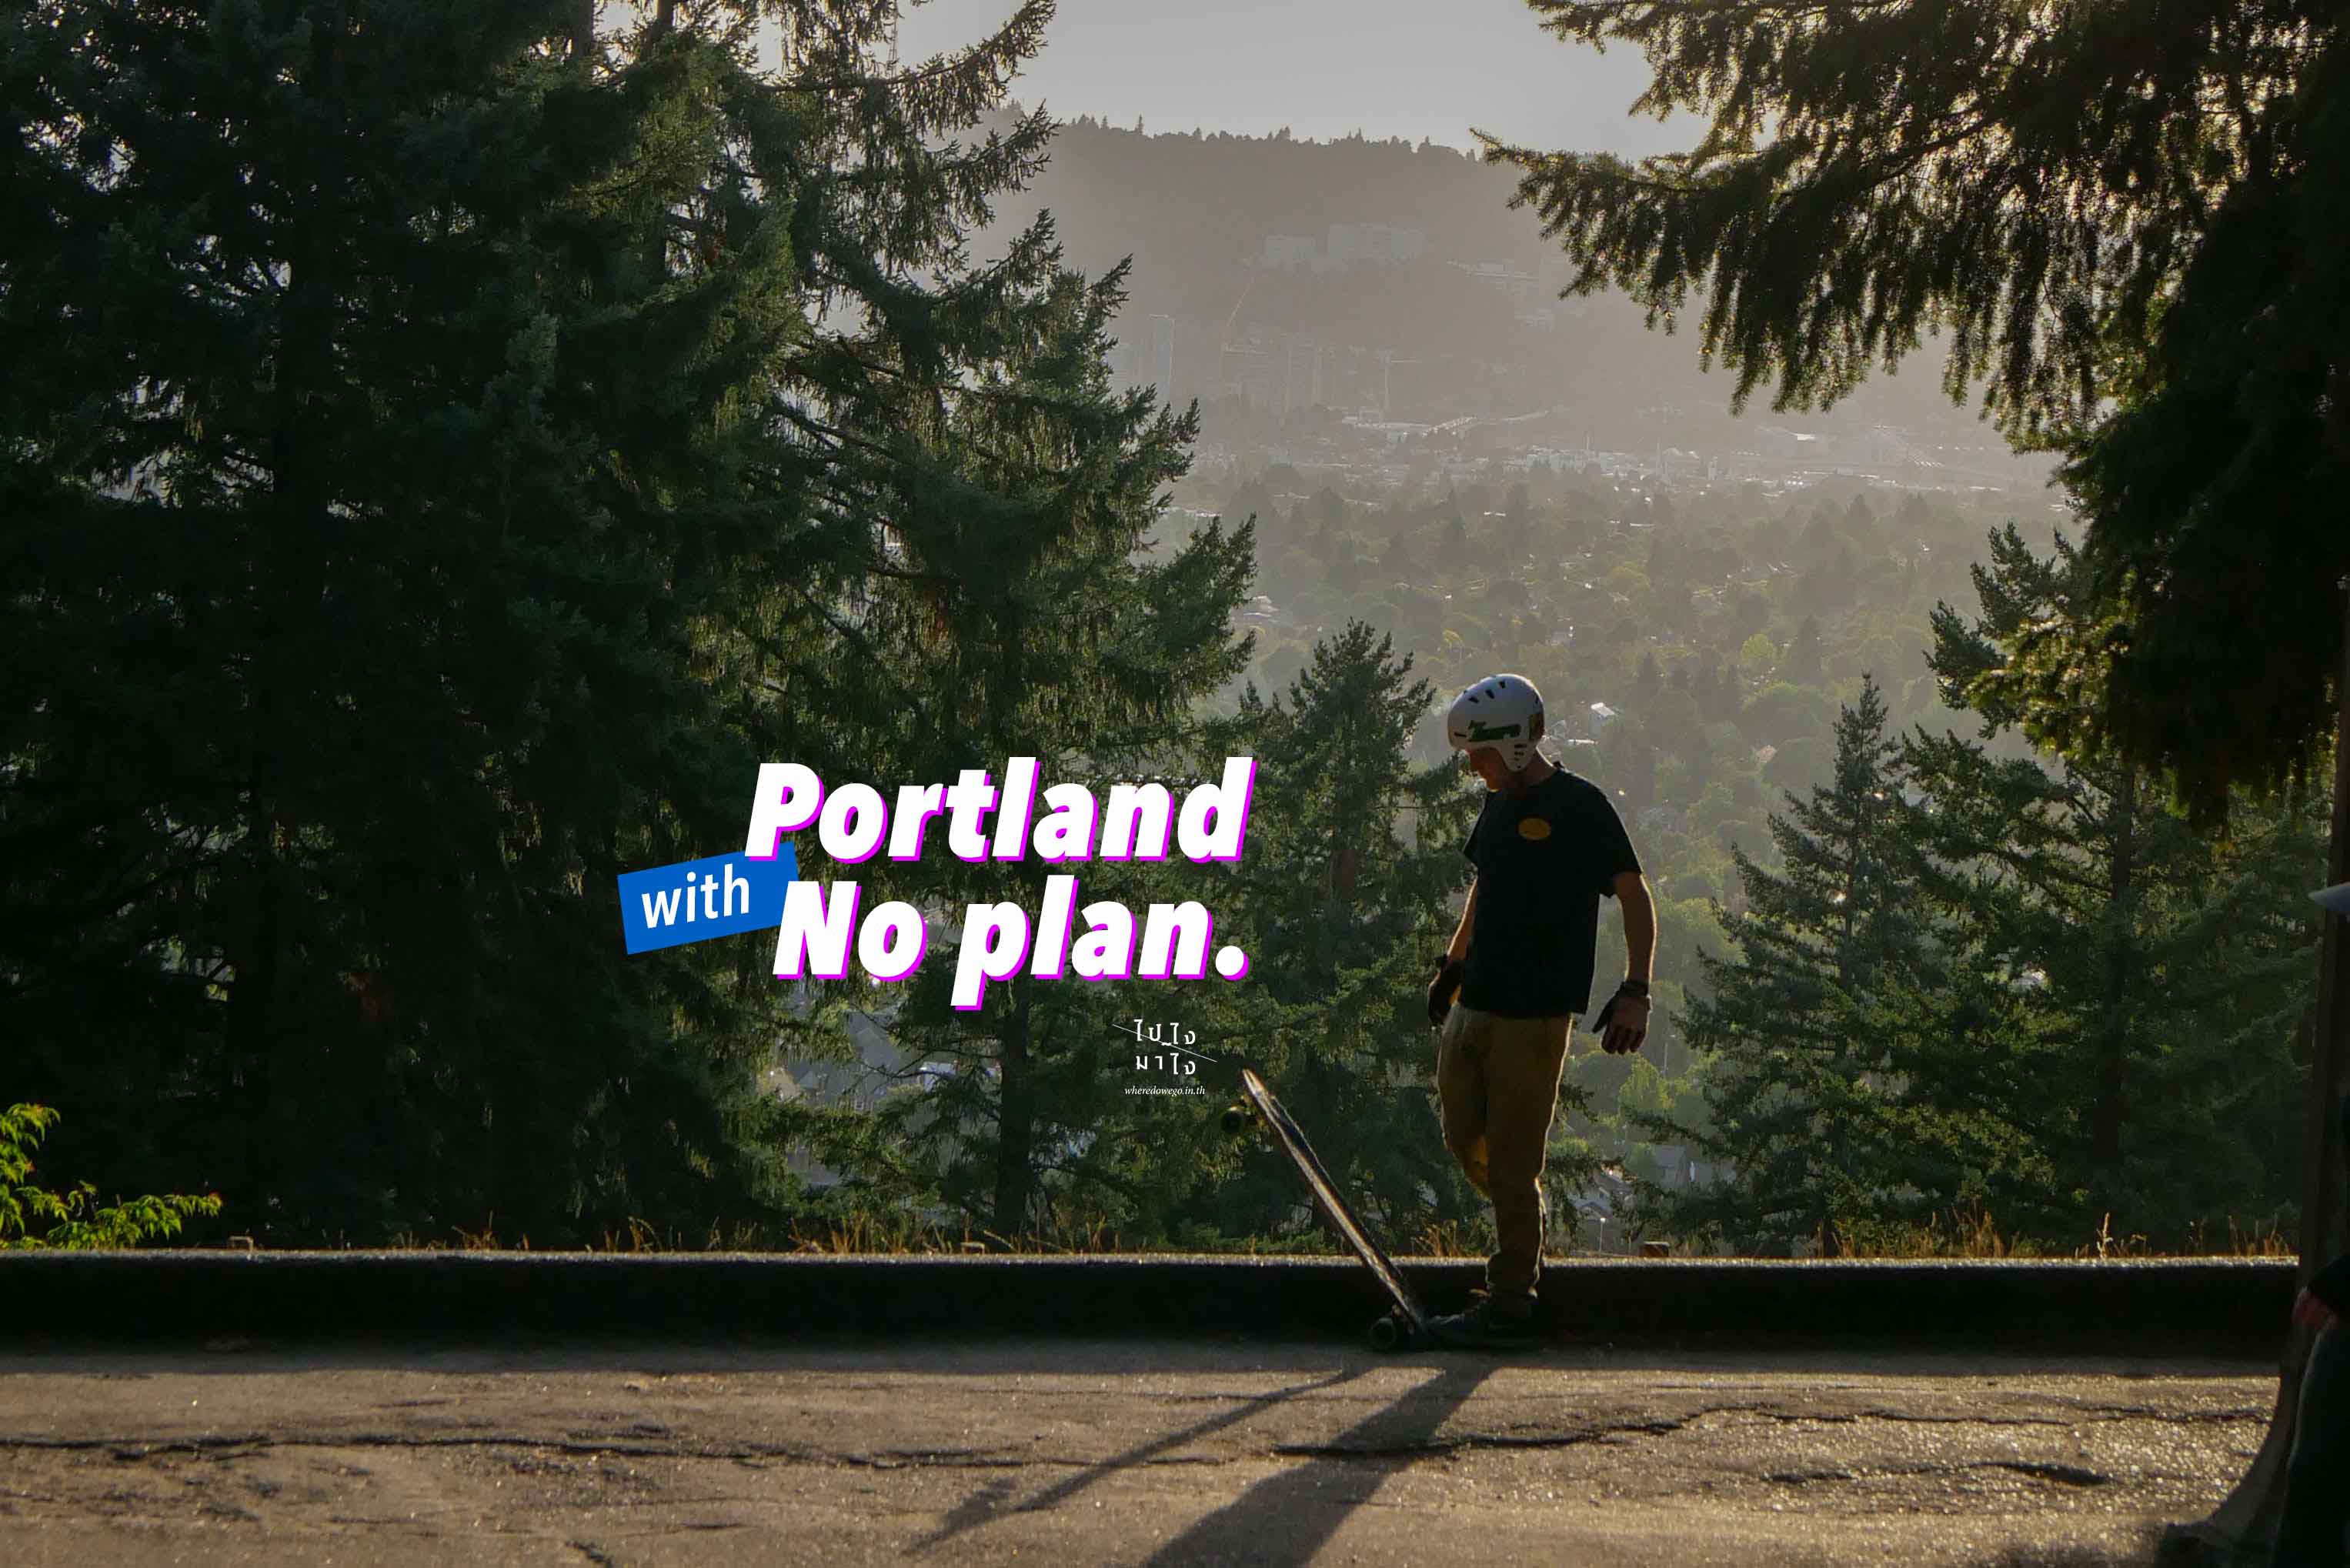 No plan in Portland เมืองที่ไม่เคยเหงาเพราะมี ‘เขา’ สวยๆ อยู่รอบตัว!